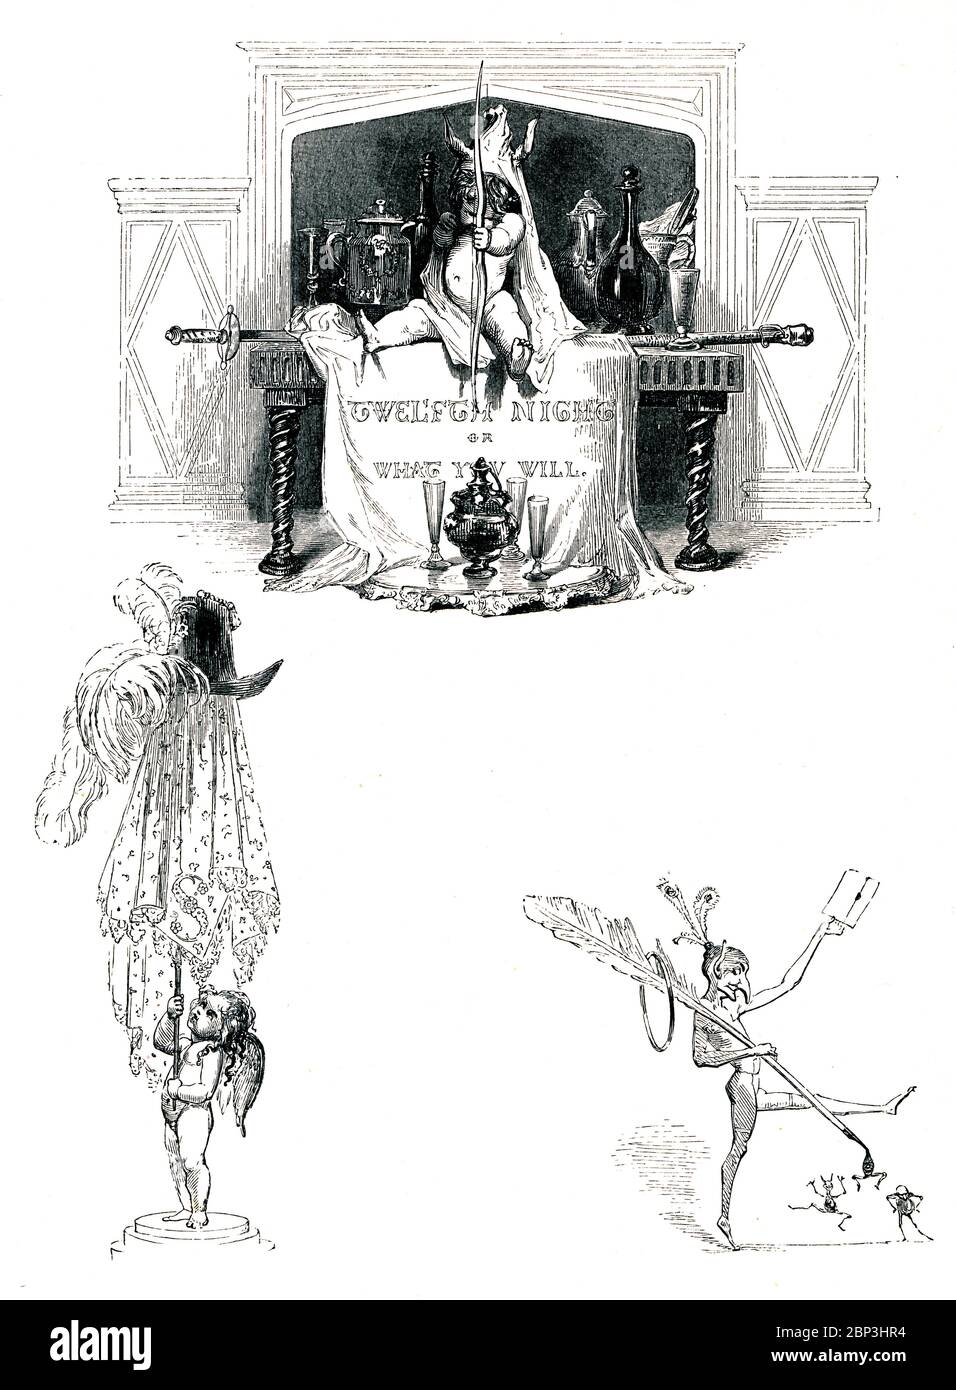 Twelfth Night, oder What You will, viktorianisches Buchfrontispiz für die romantische Komödie zur Weihnachtszeit, aus dem 1849 illustrierten Buch Heroines of Shakespeare Stockfoto